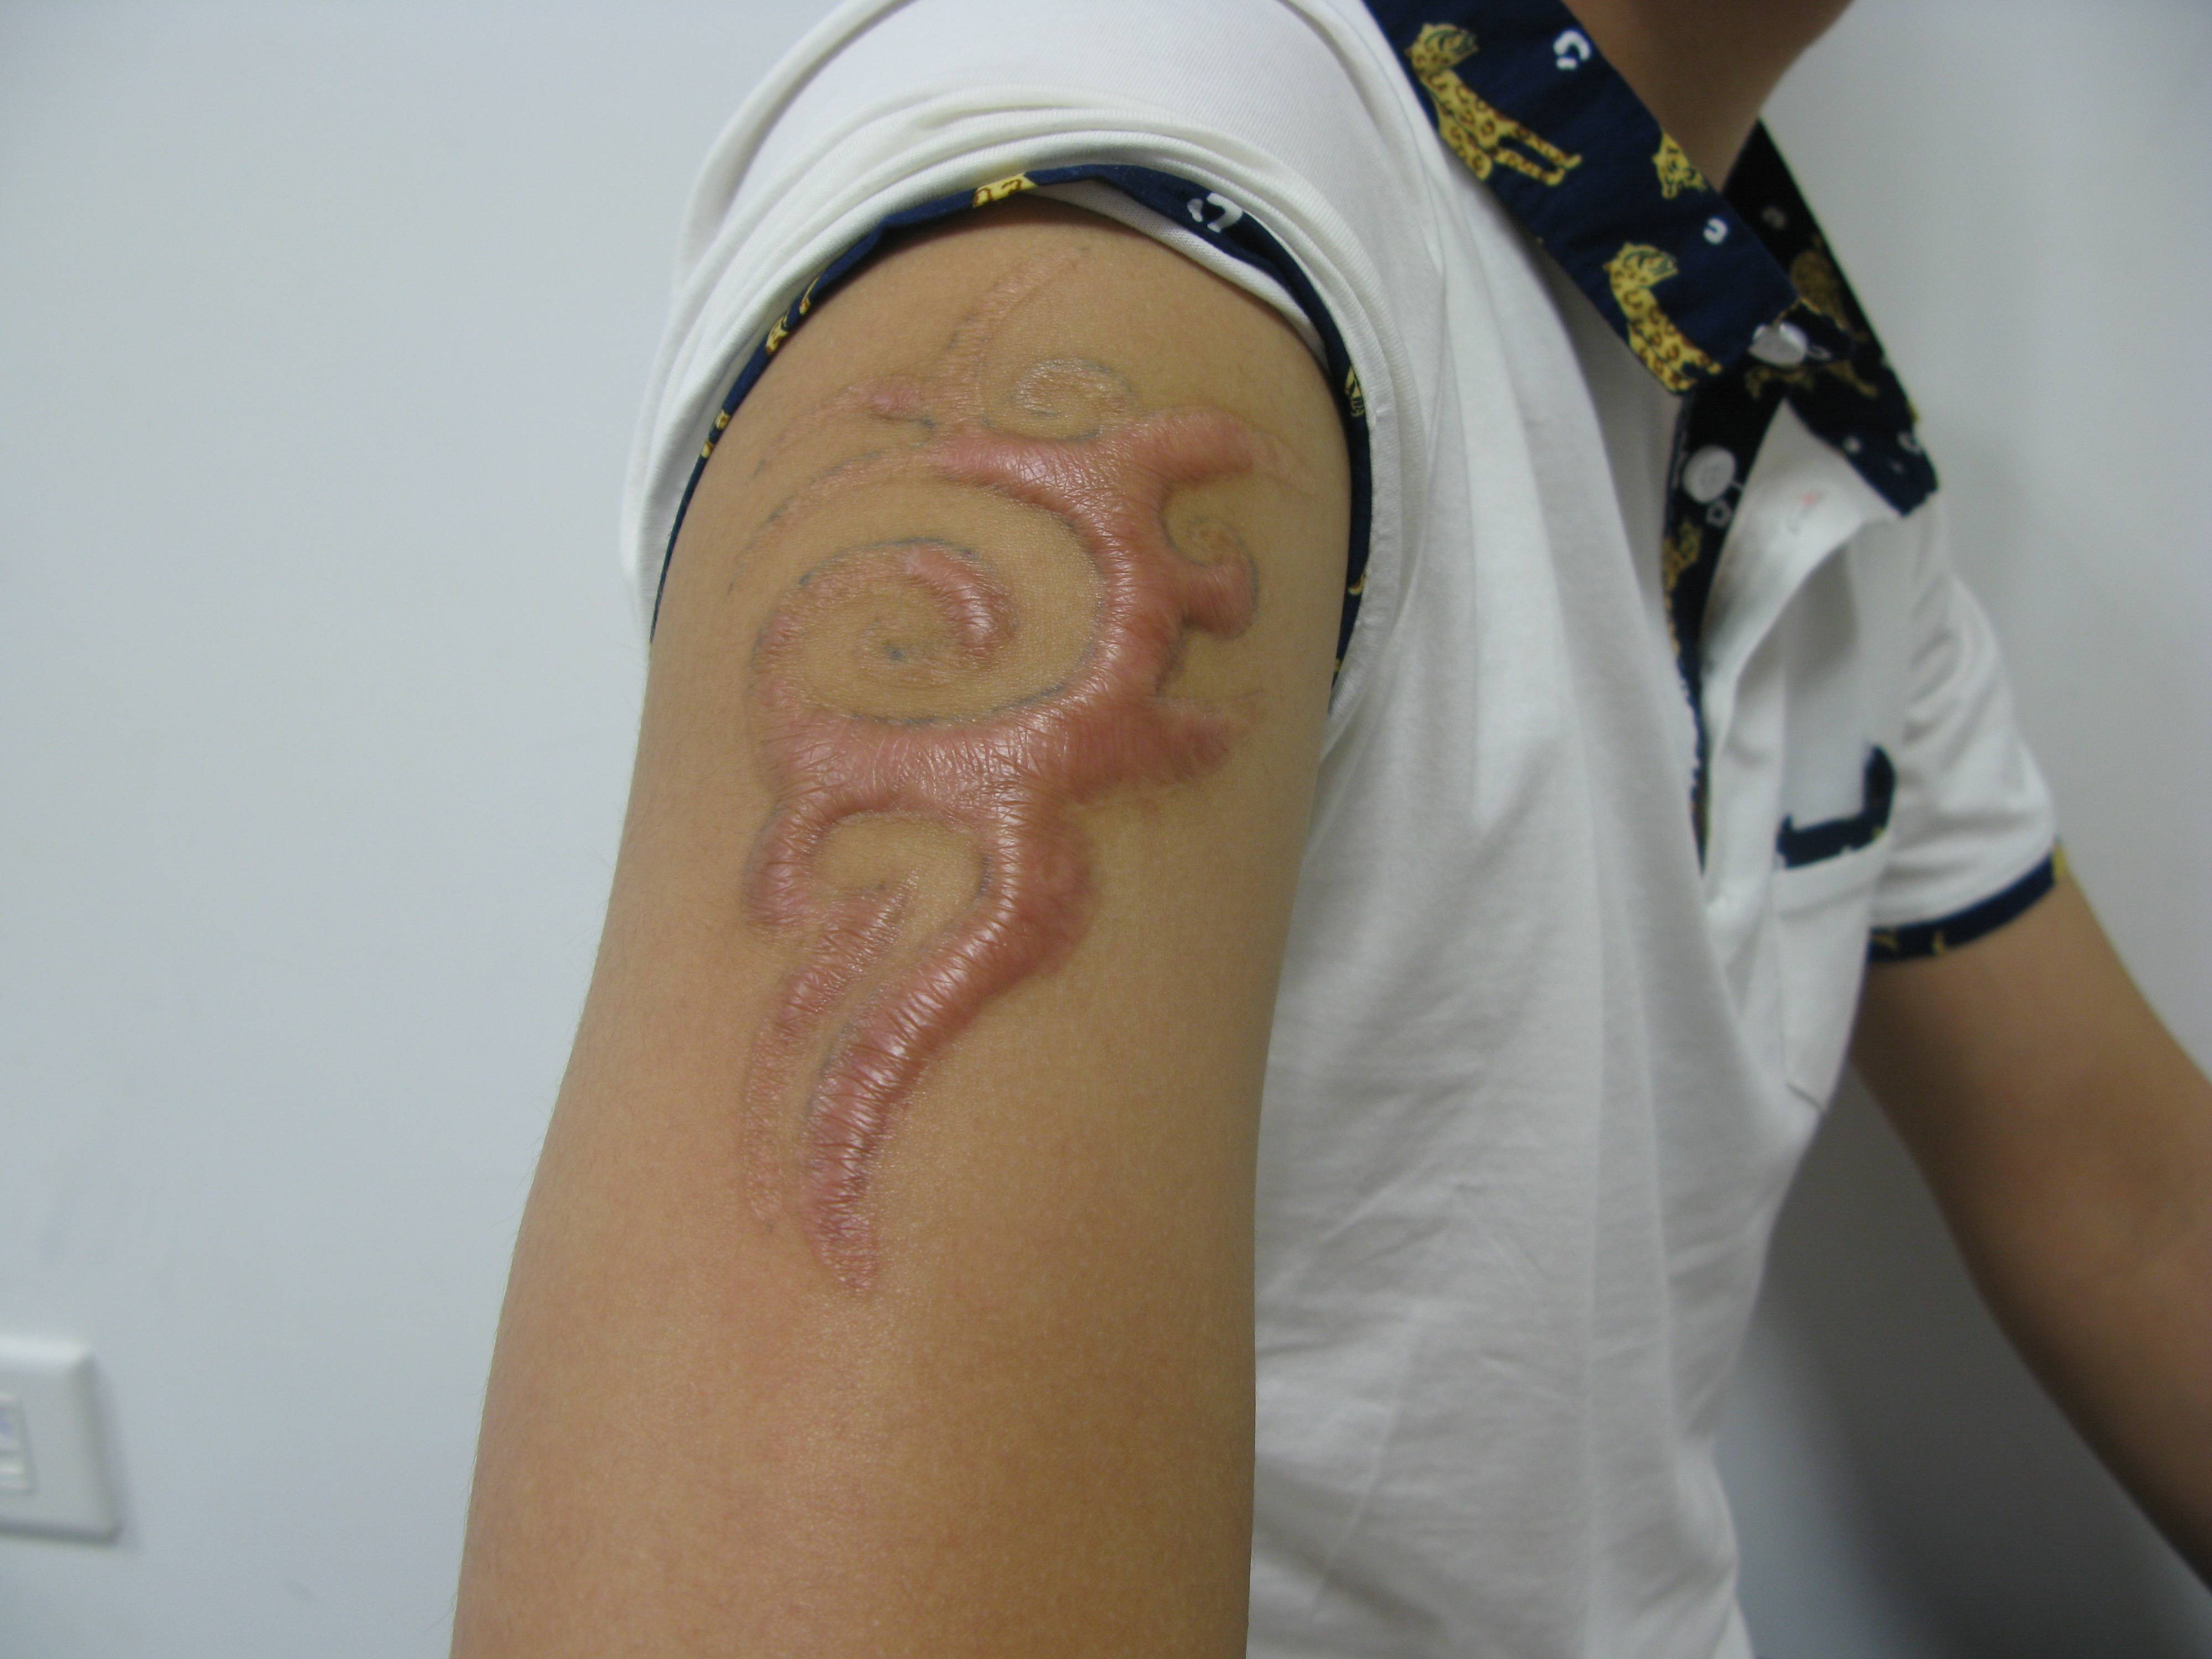 郑州市第二中医院:纹身覆盖疤痕有哪些风险?